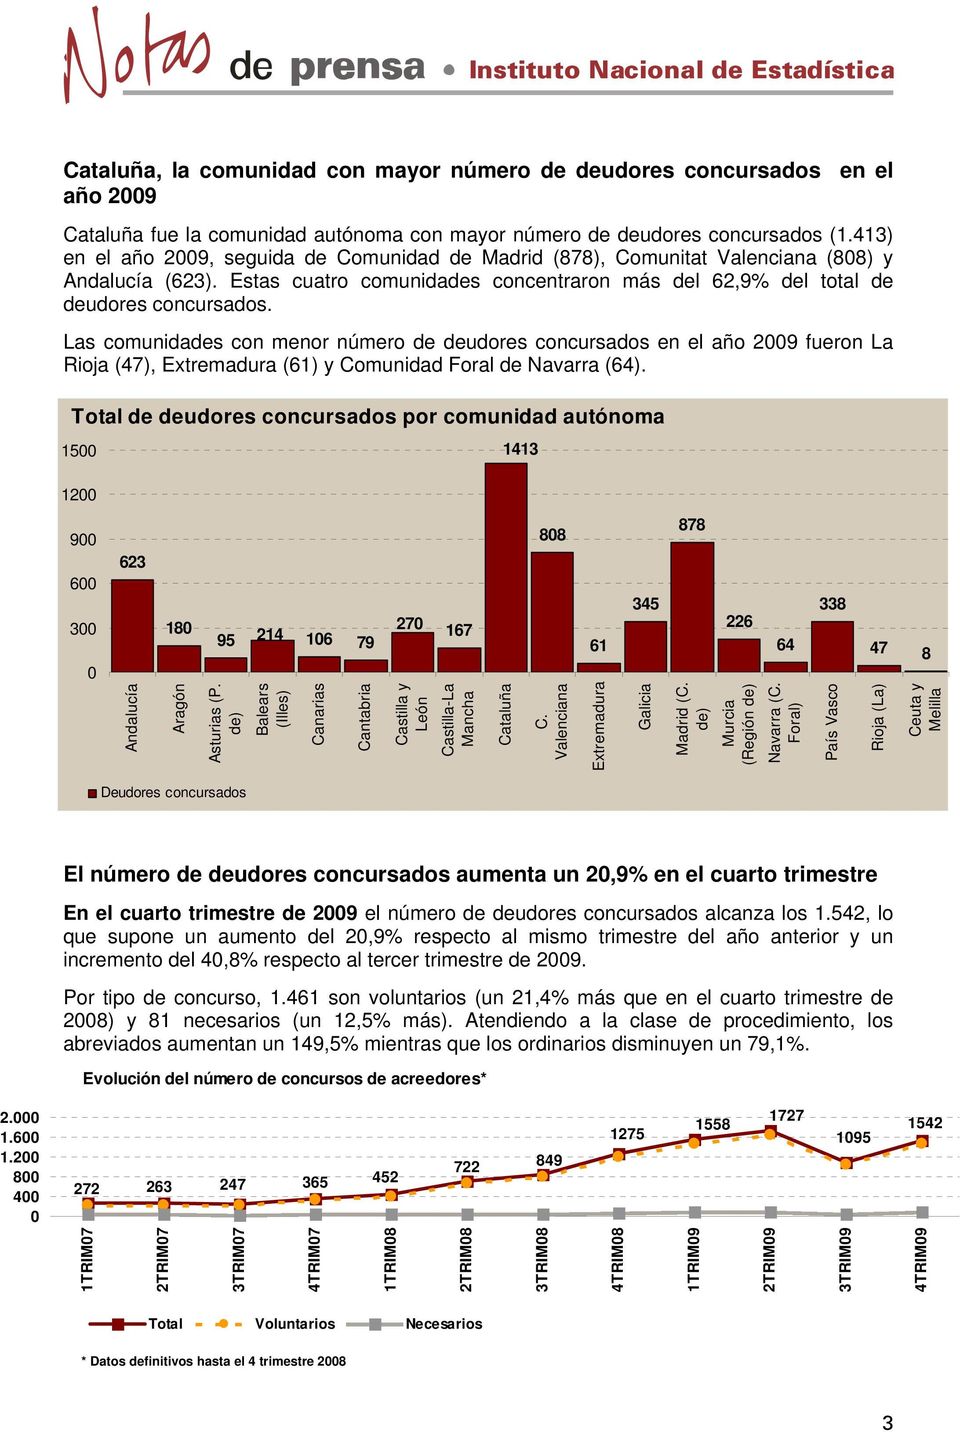 Las comunidades con menor número de deudores concursados en el año 2009 fueron La Rioja (47), Extremadura (61) y Comunidad Foral de Navarra (64).